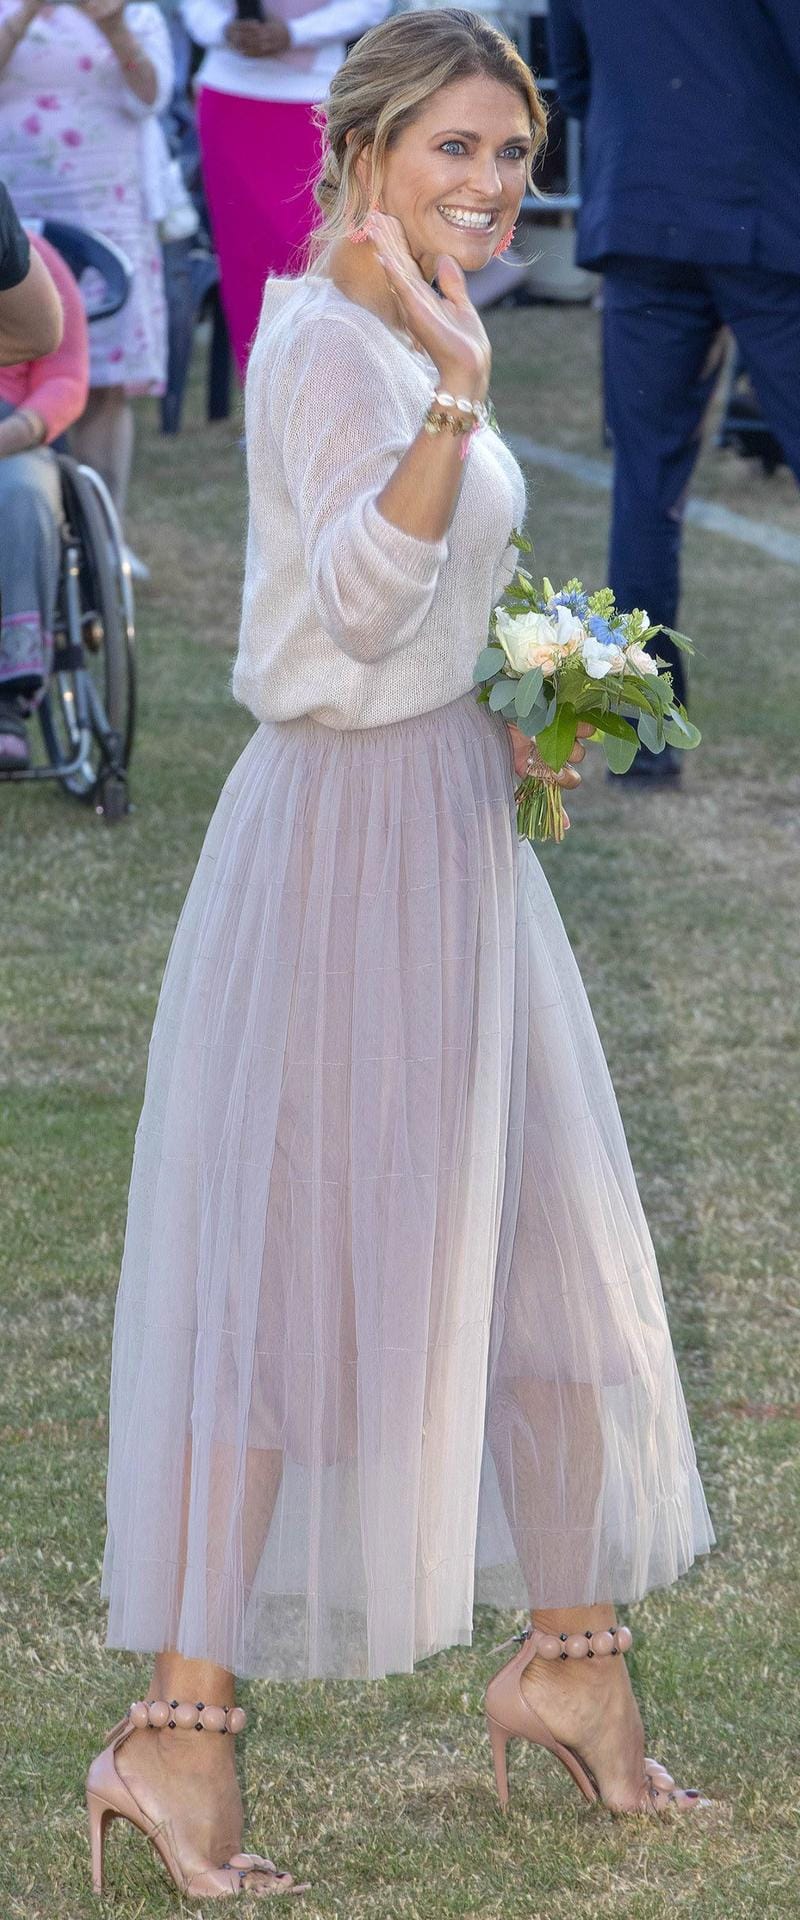 Prinzessin Madeleine im Juli 2019 beim 42. Geburtstag von Kronprinzessin Victoria